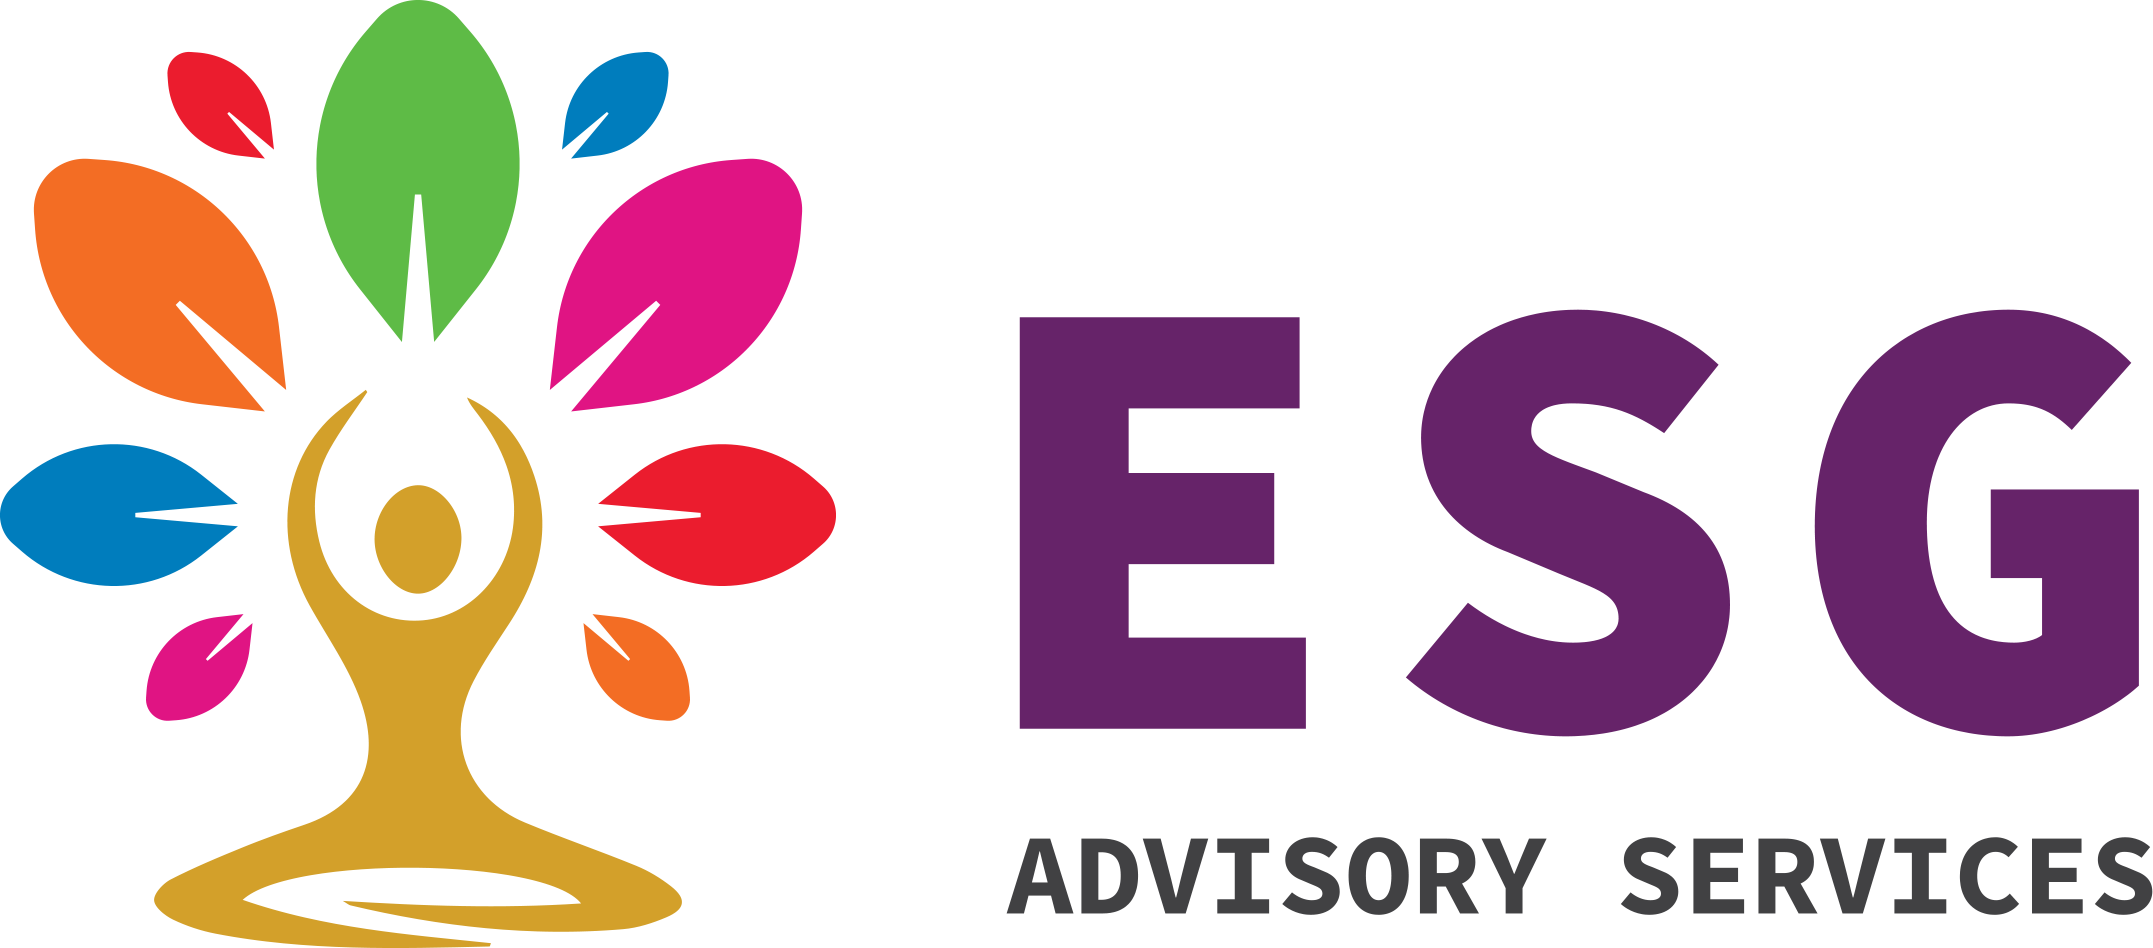 ESG Advisory Services